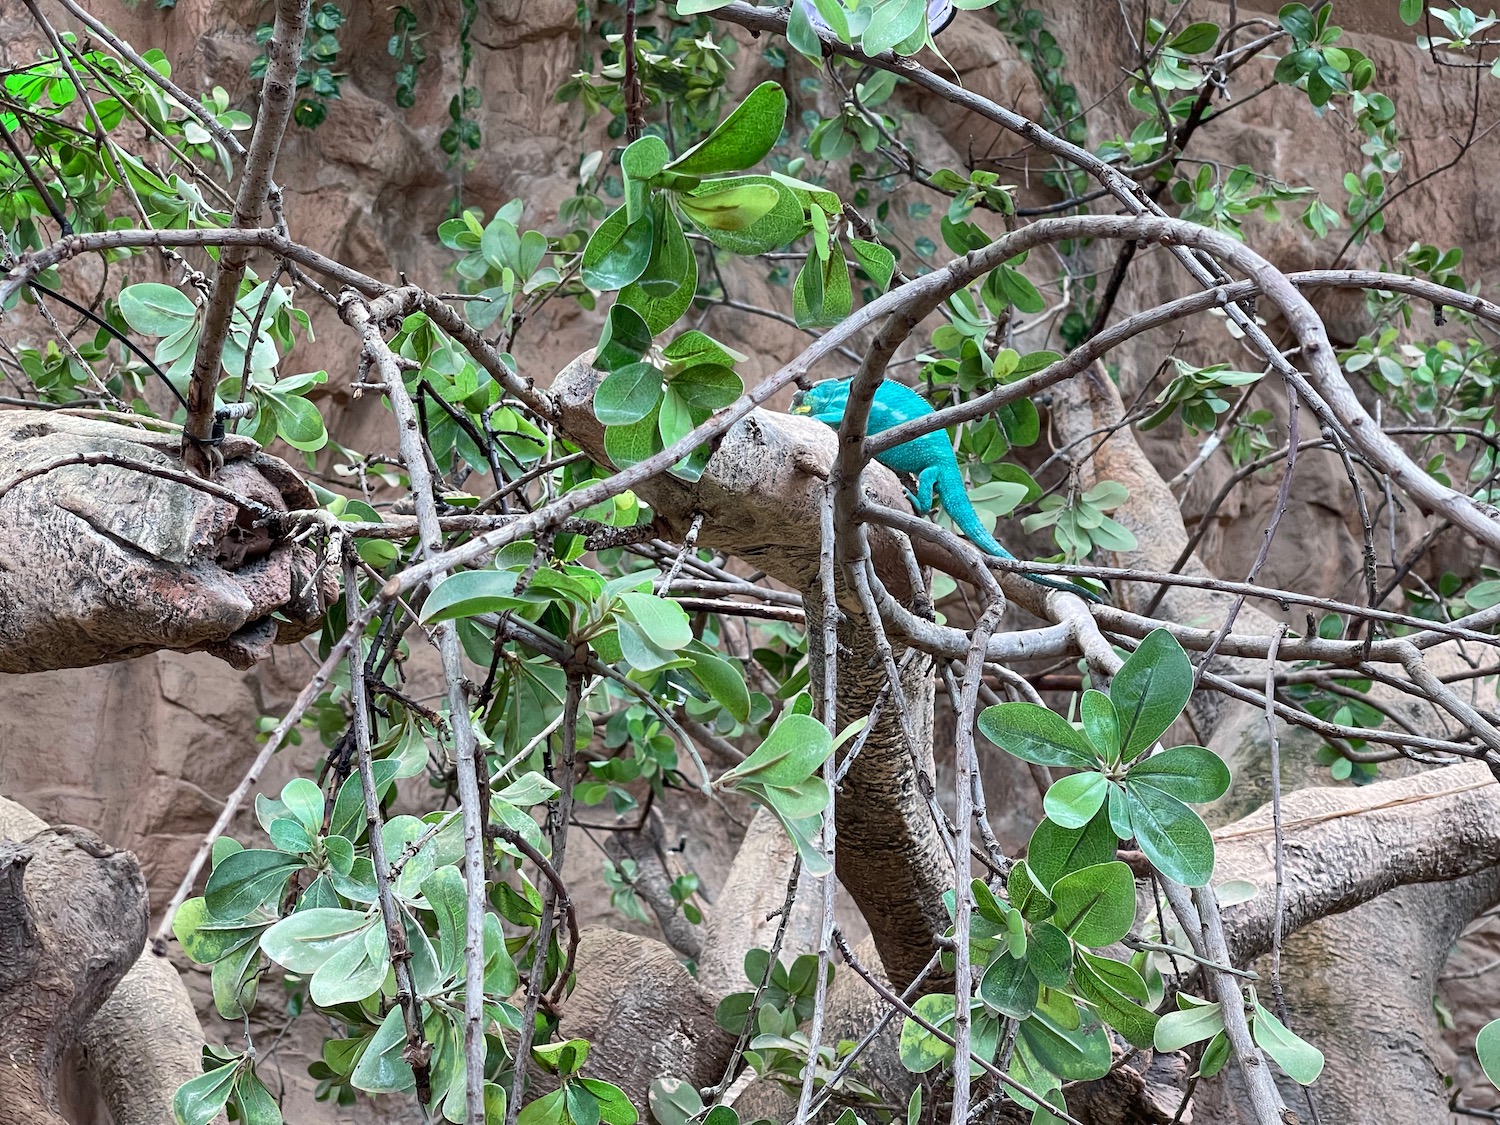 a lizard on a tree branch